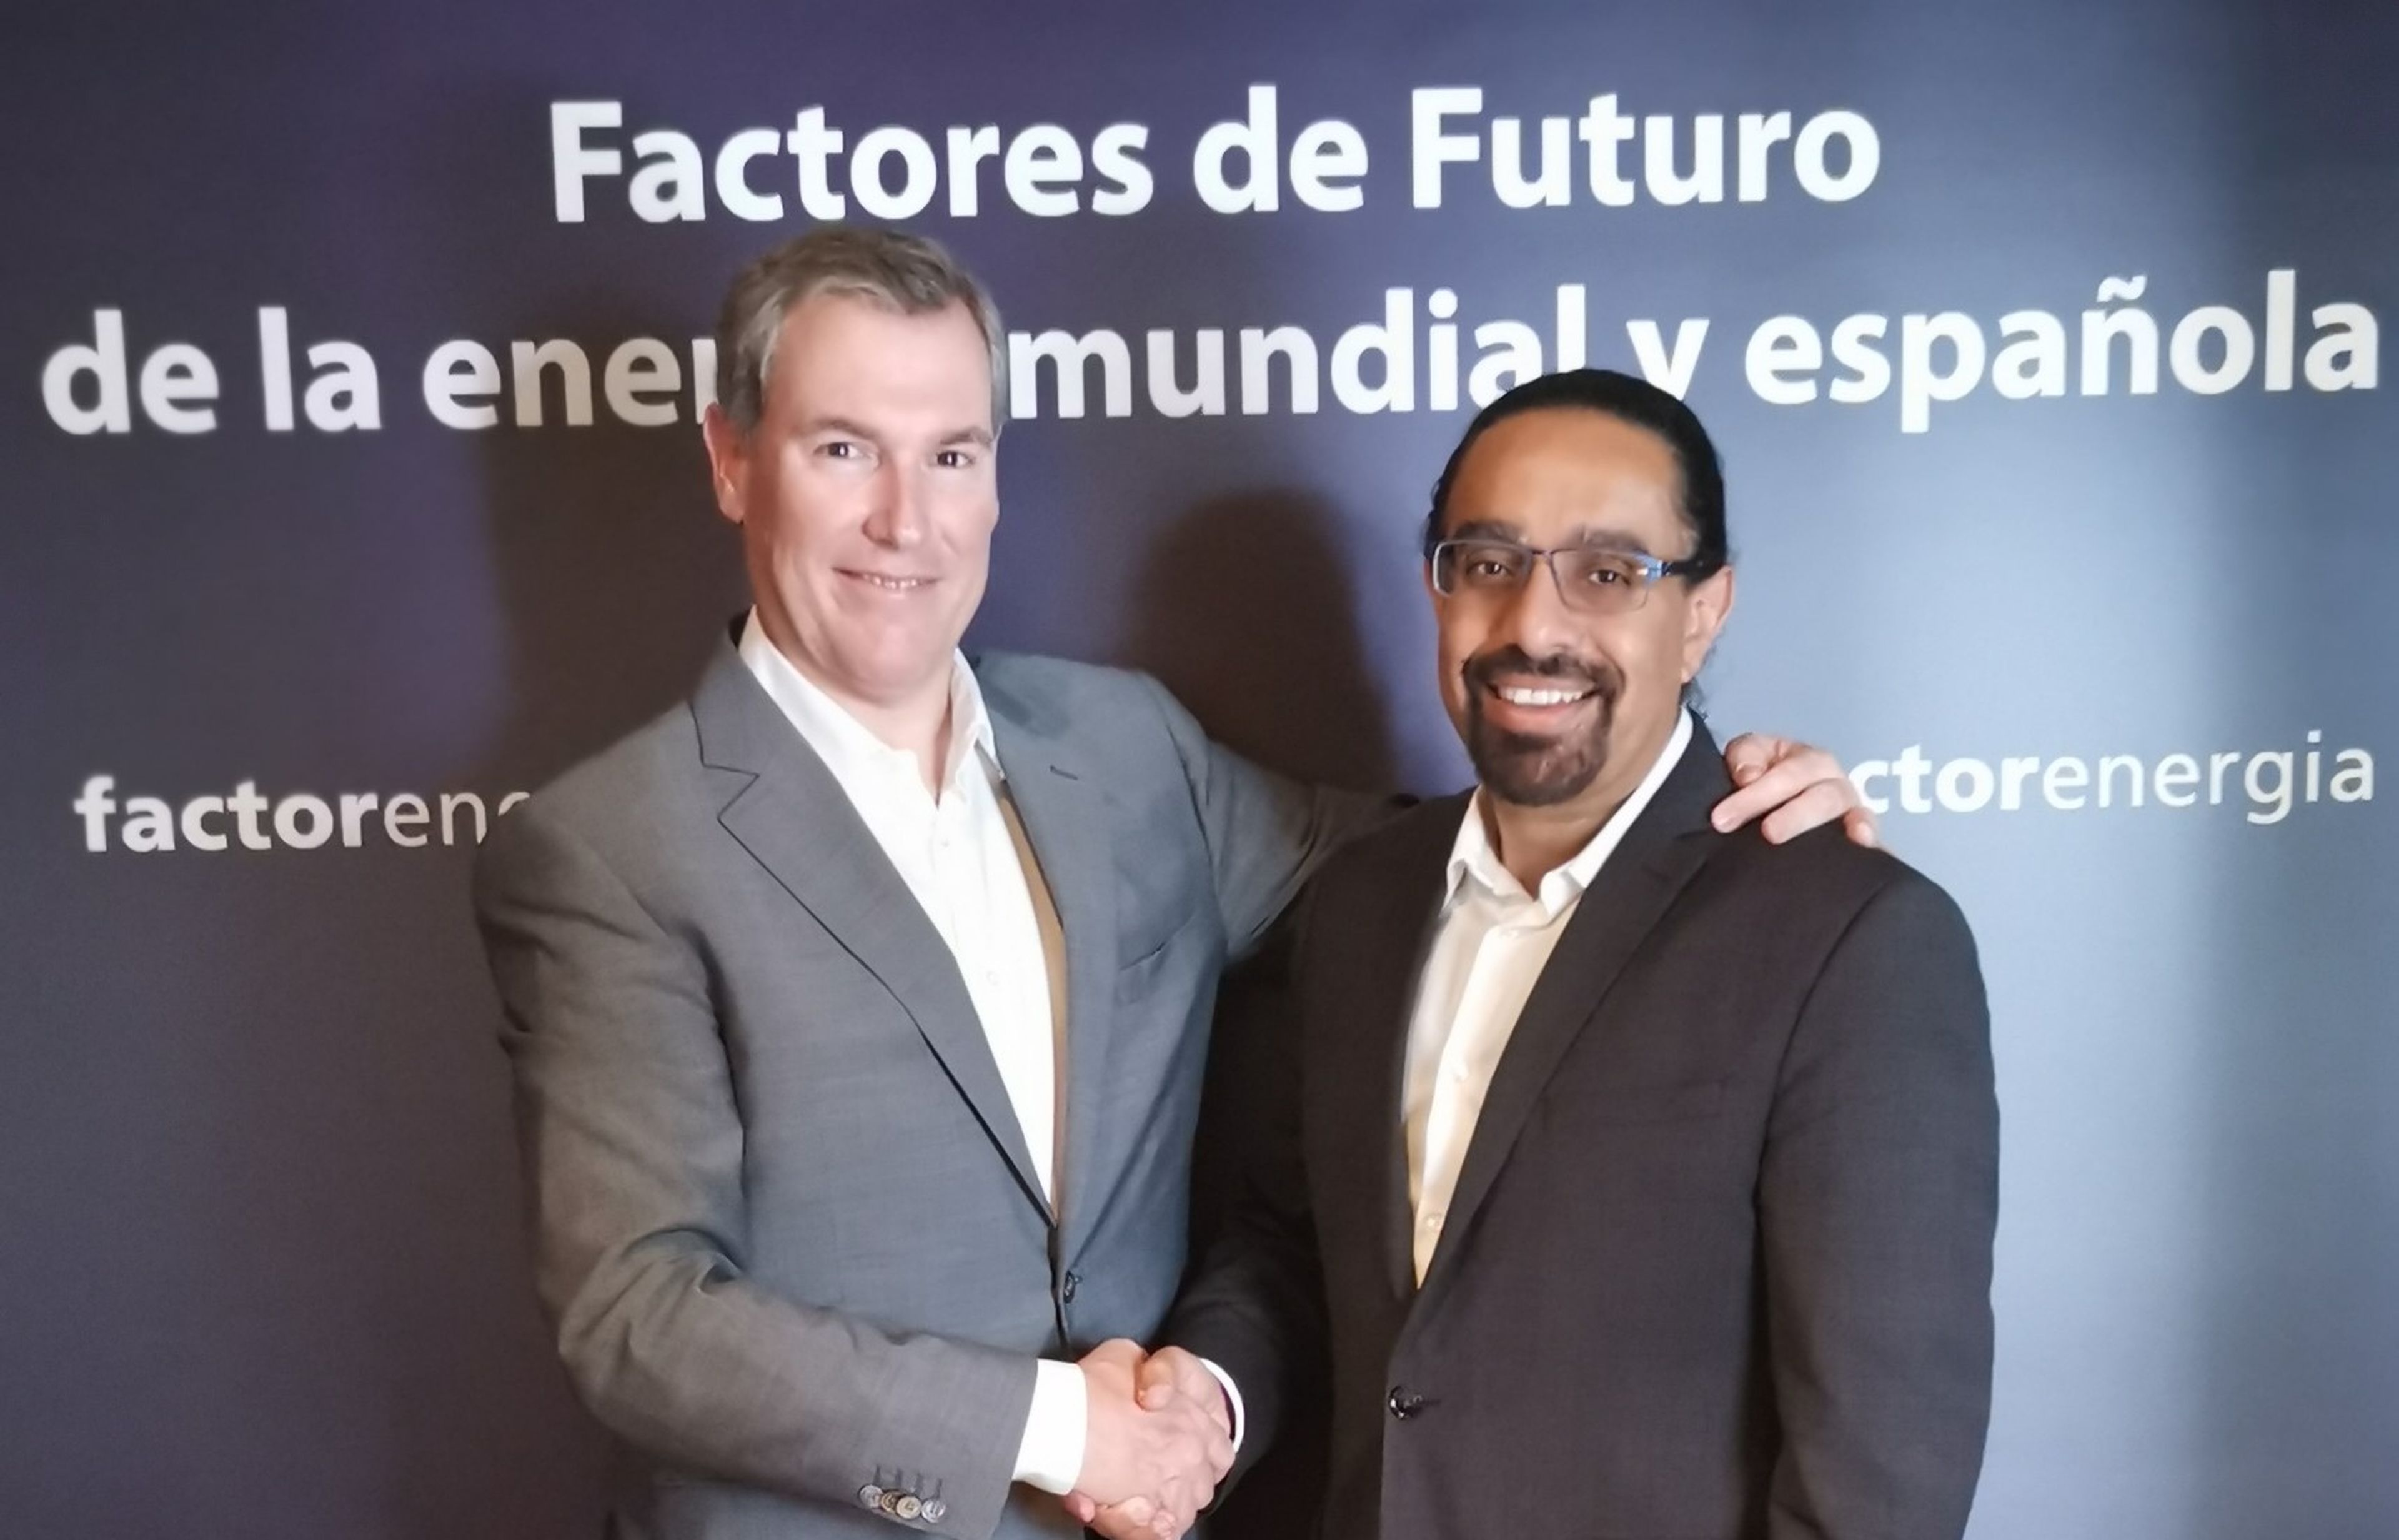 El CEO de Factor Energía, Emilio Rousaud y el catedrático de la Singularity University, Ramez Naam en la jornada Factores de Futuro